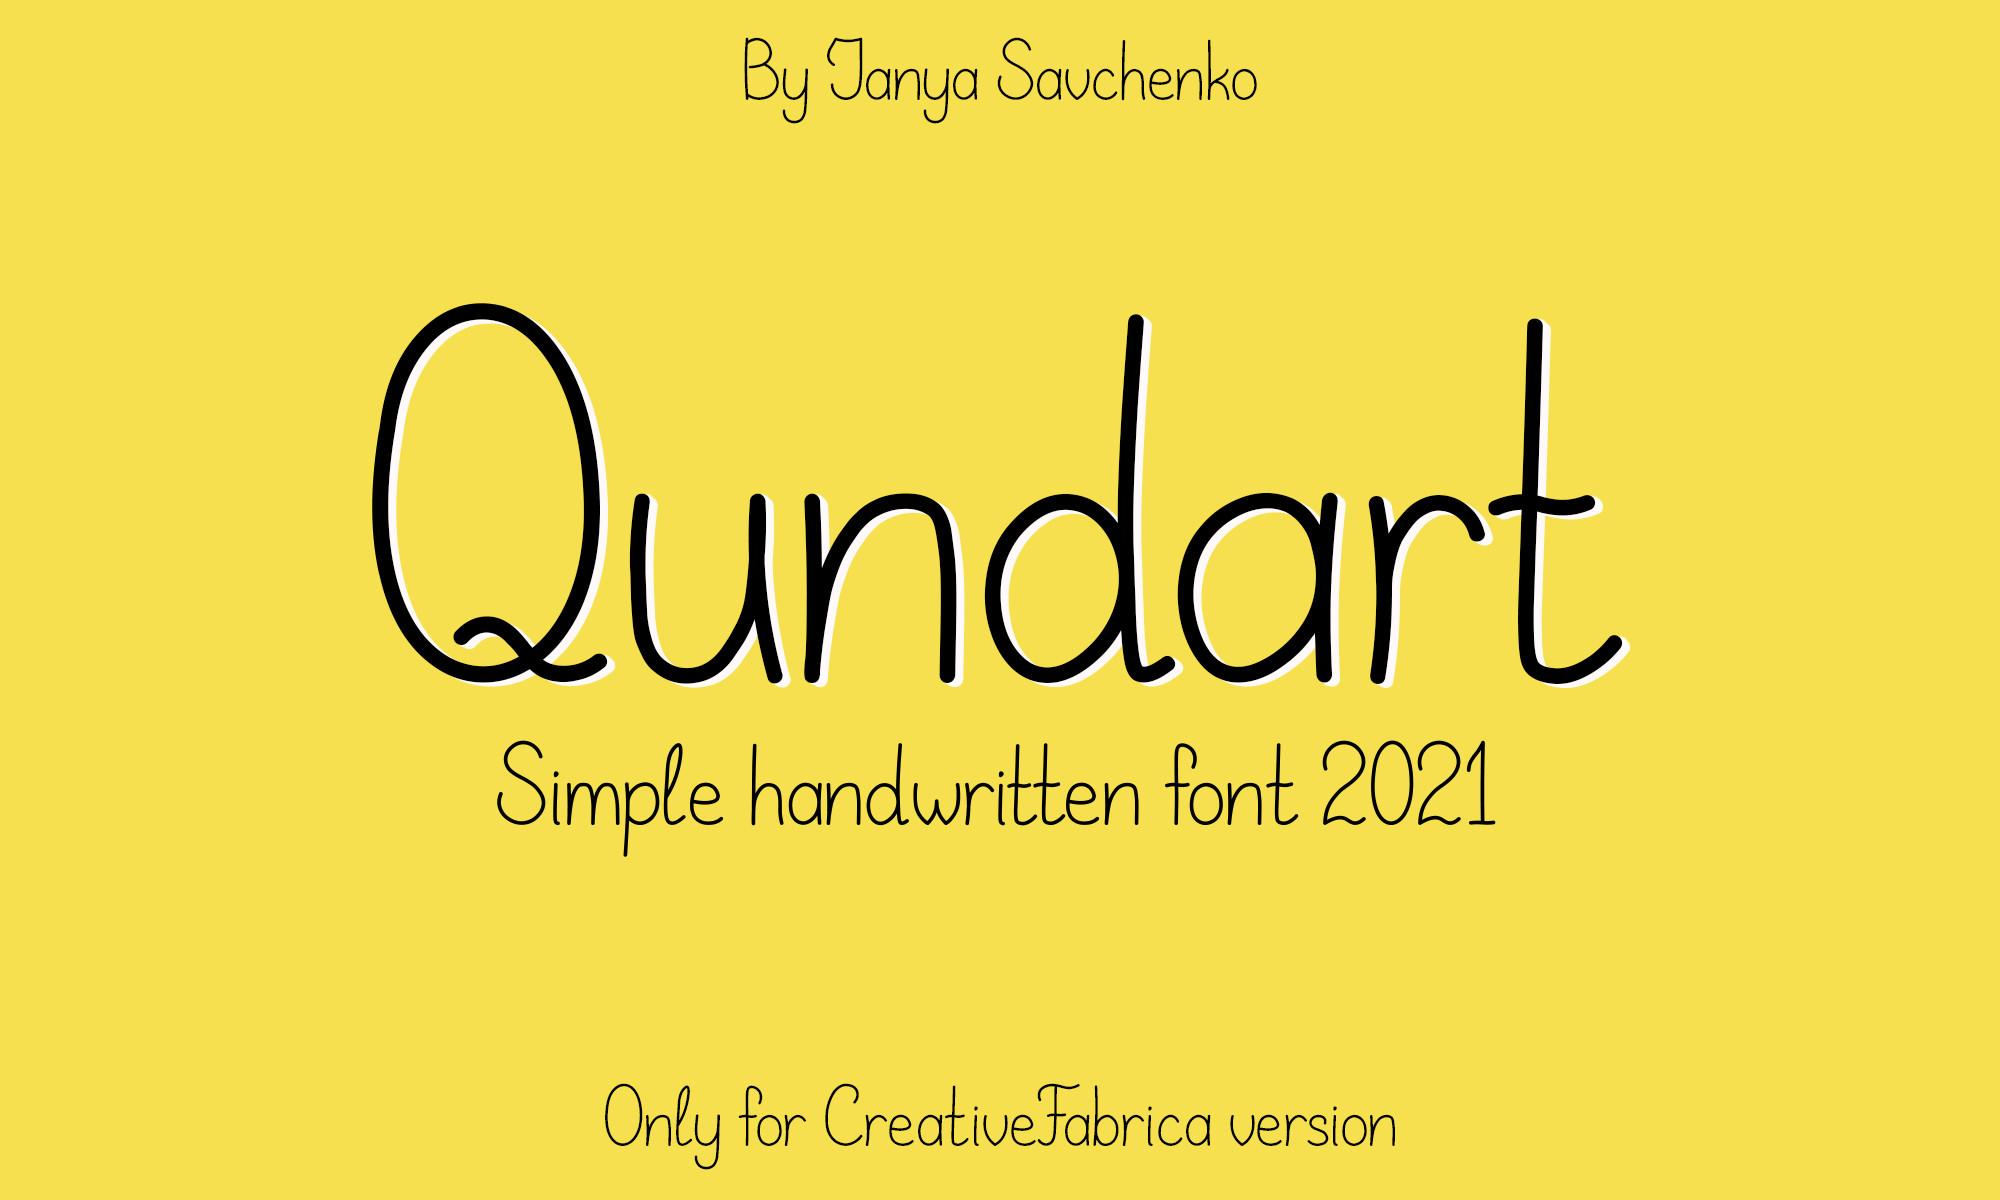 Qundart - Simple Handwritten Font